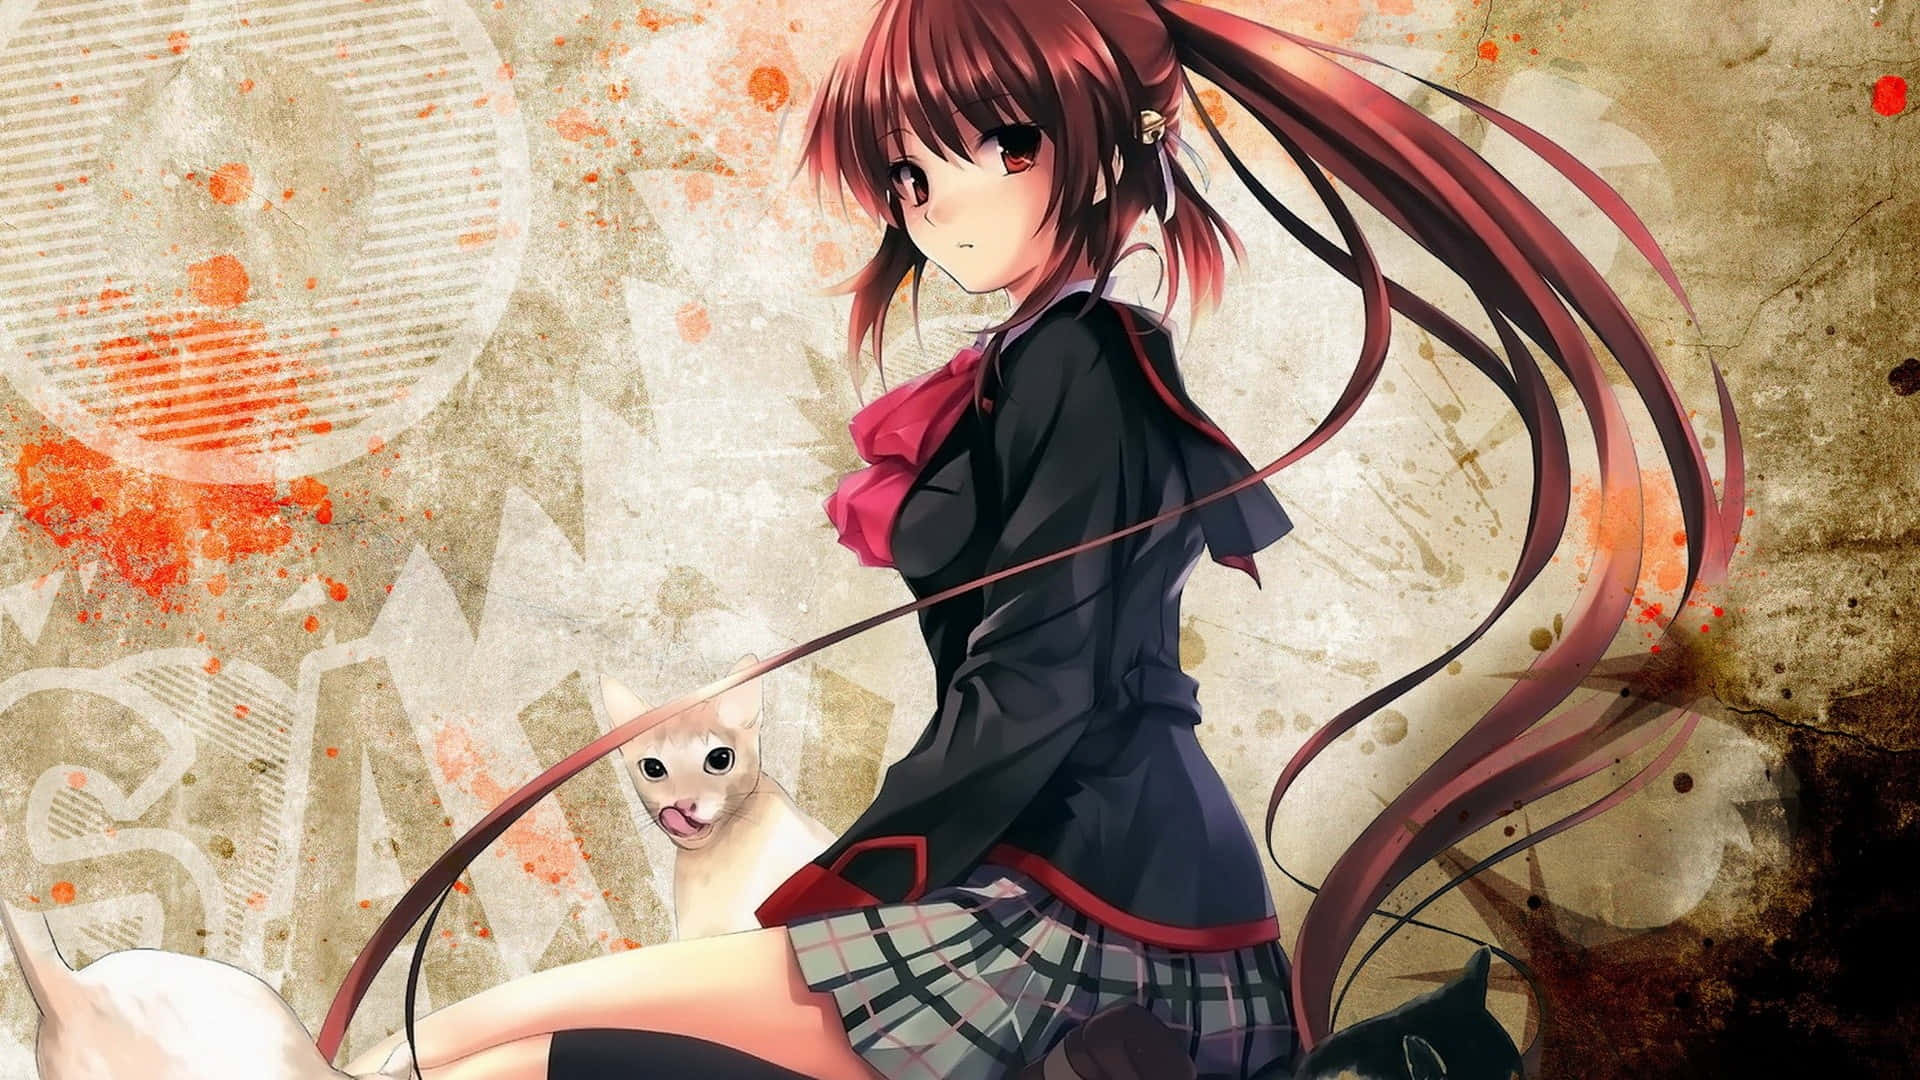 Anime Aesthetic Girl In Uniform Ps4 Wallpaper